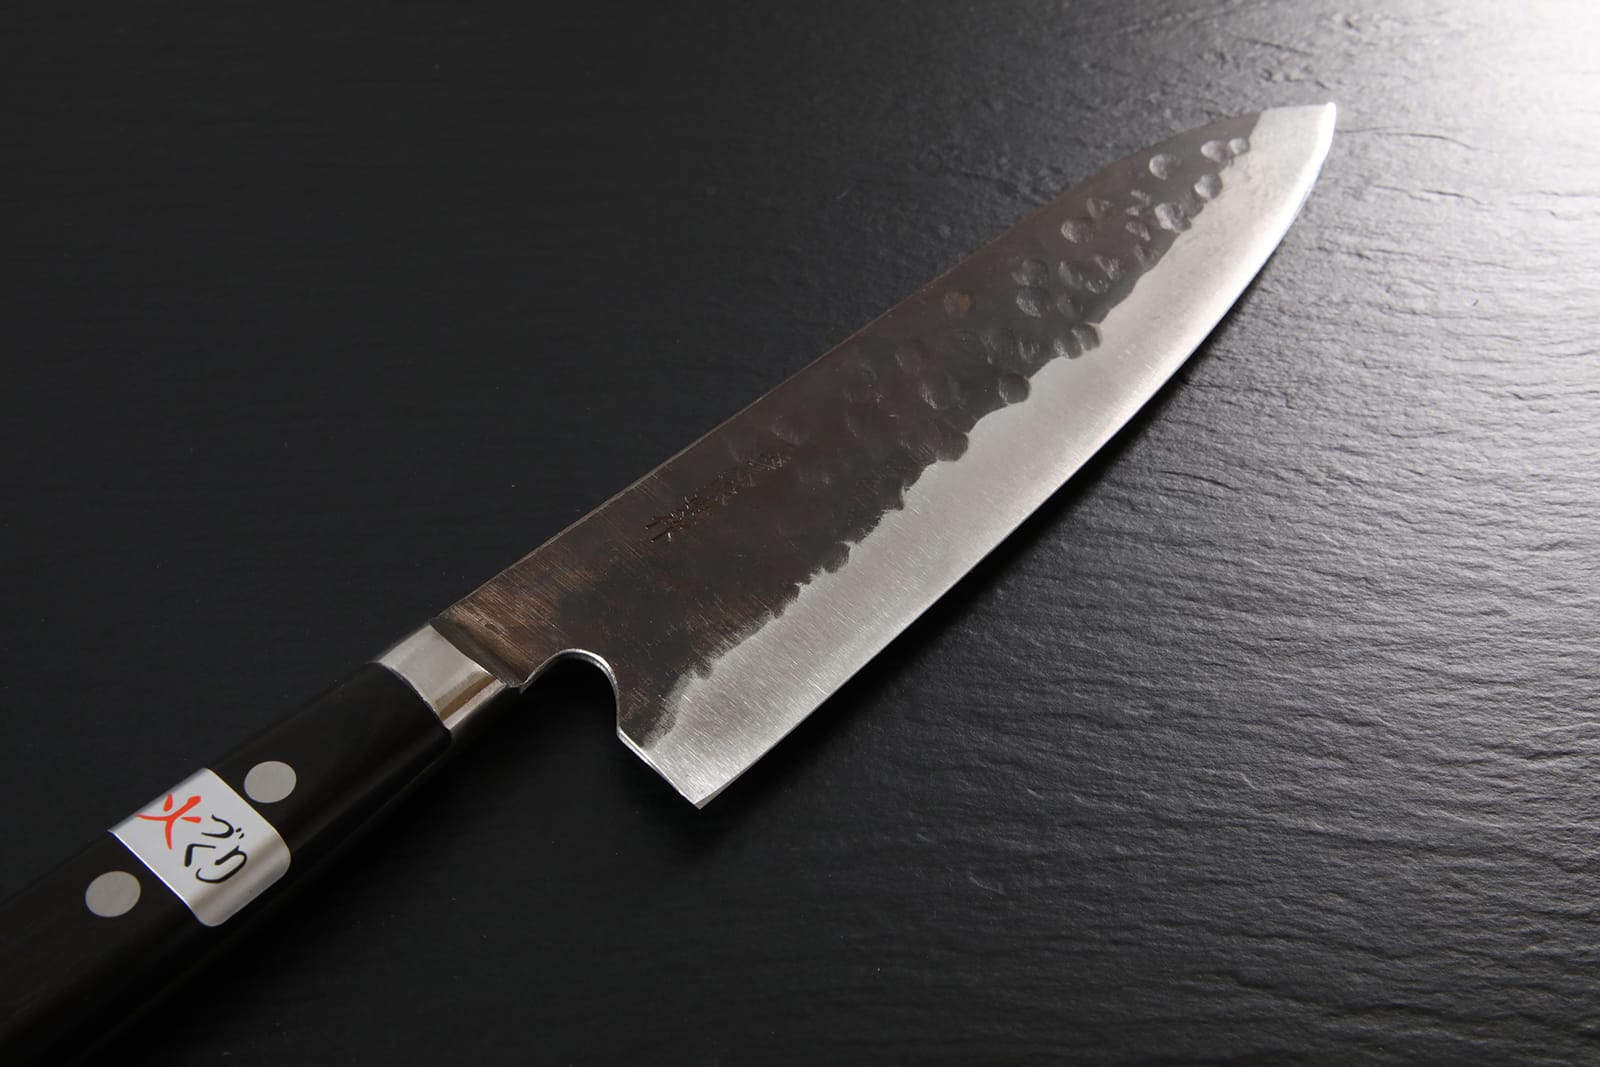 Gyuto knife [Denka]